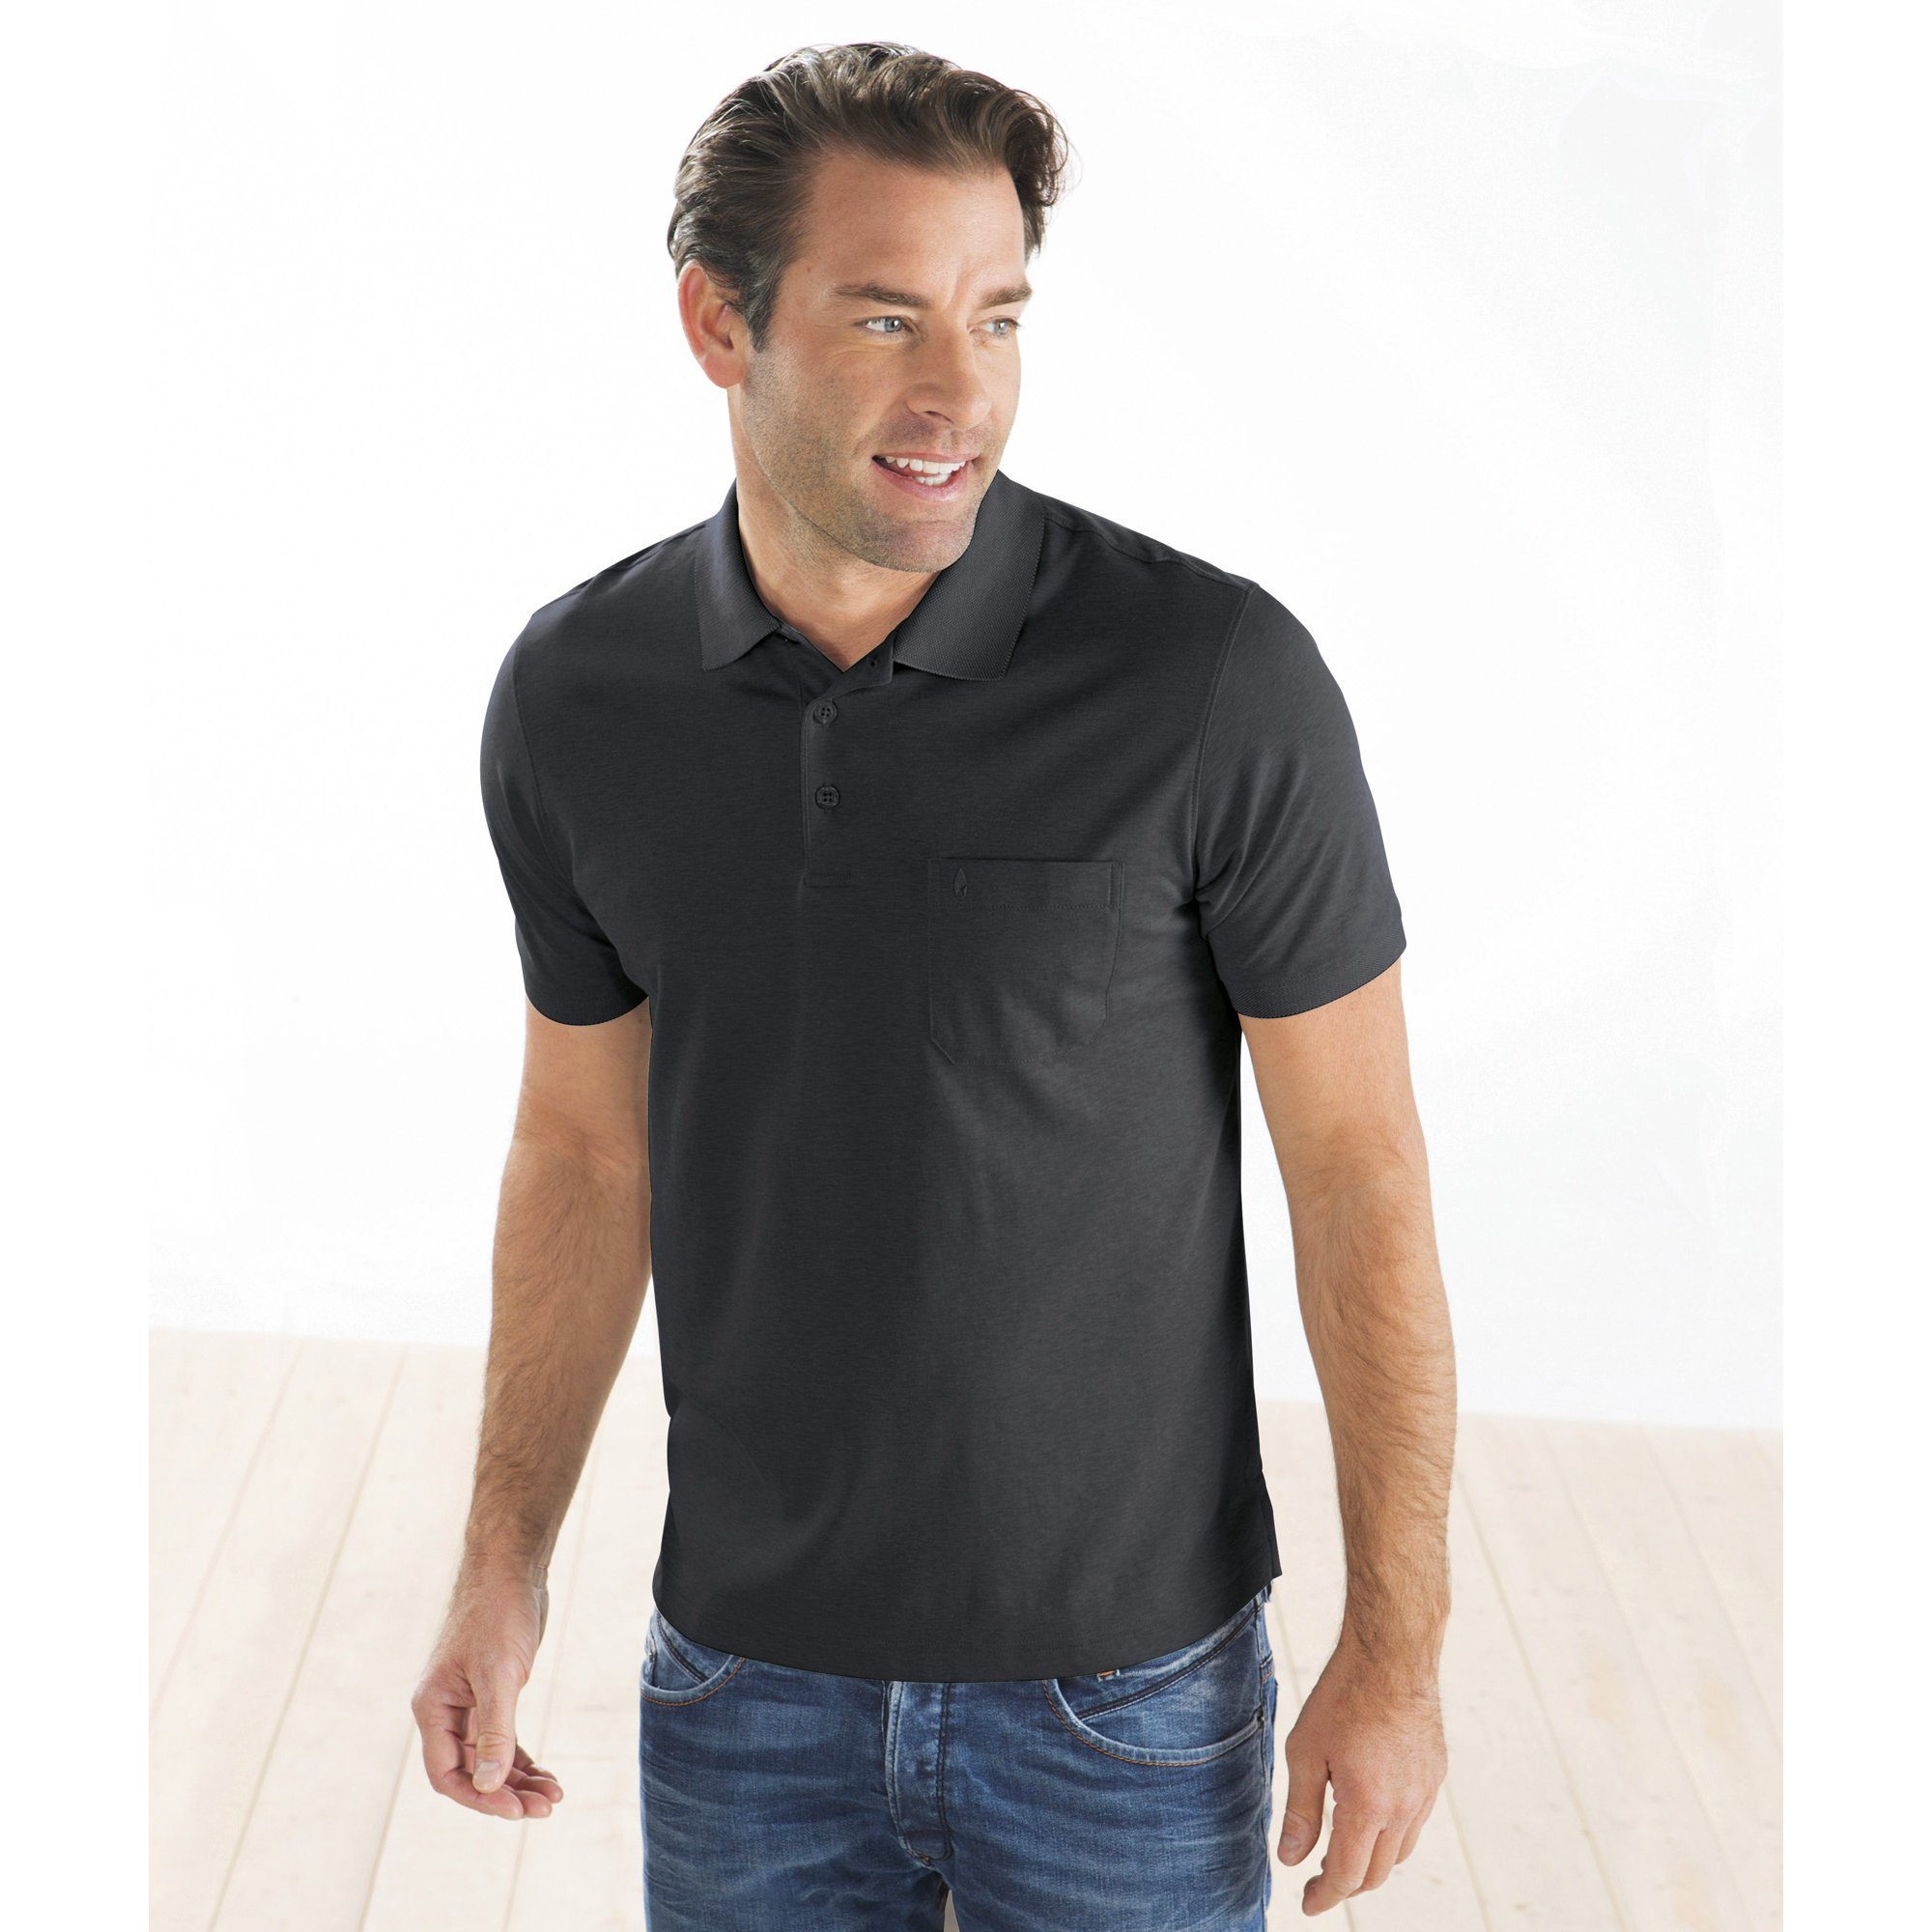 graphit Uni Sweatshirt RAGMAN Herren-Poloshirt